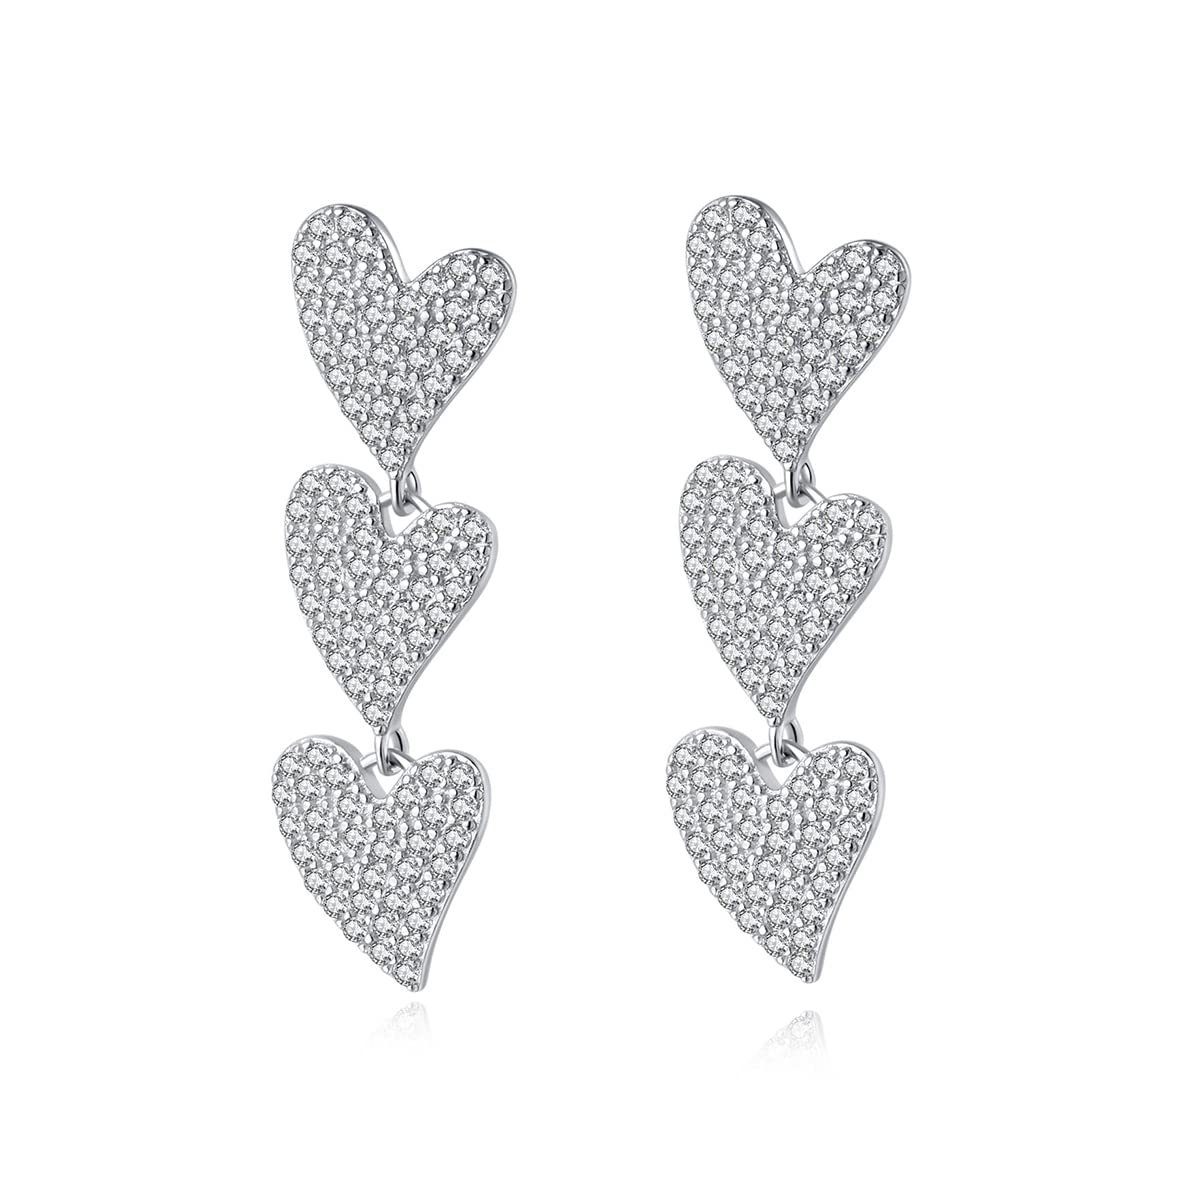 POCHUMIDUU Paar Ohrhänger Legierungen Shiny CZ Heart Dangle Earrings (2-tlg., Heart Drop Earrings Wedding Sweet Love Dangle Earrings), for Women Teen Girls